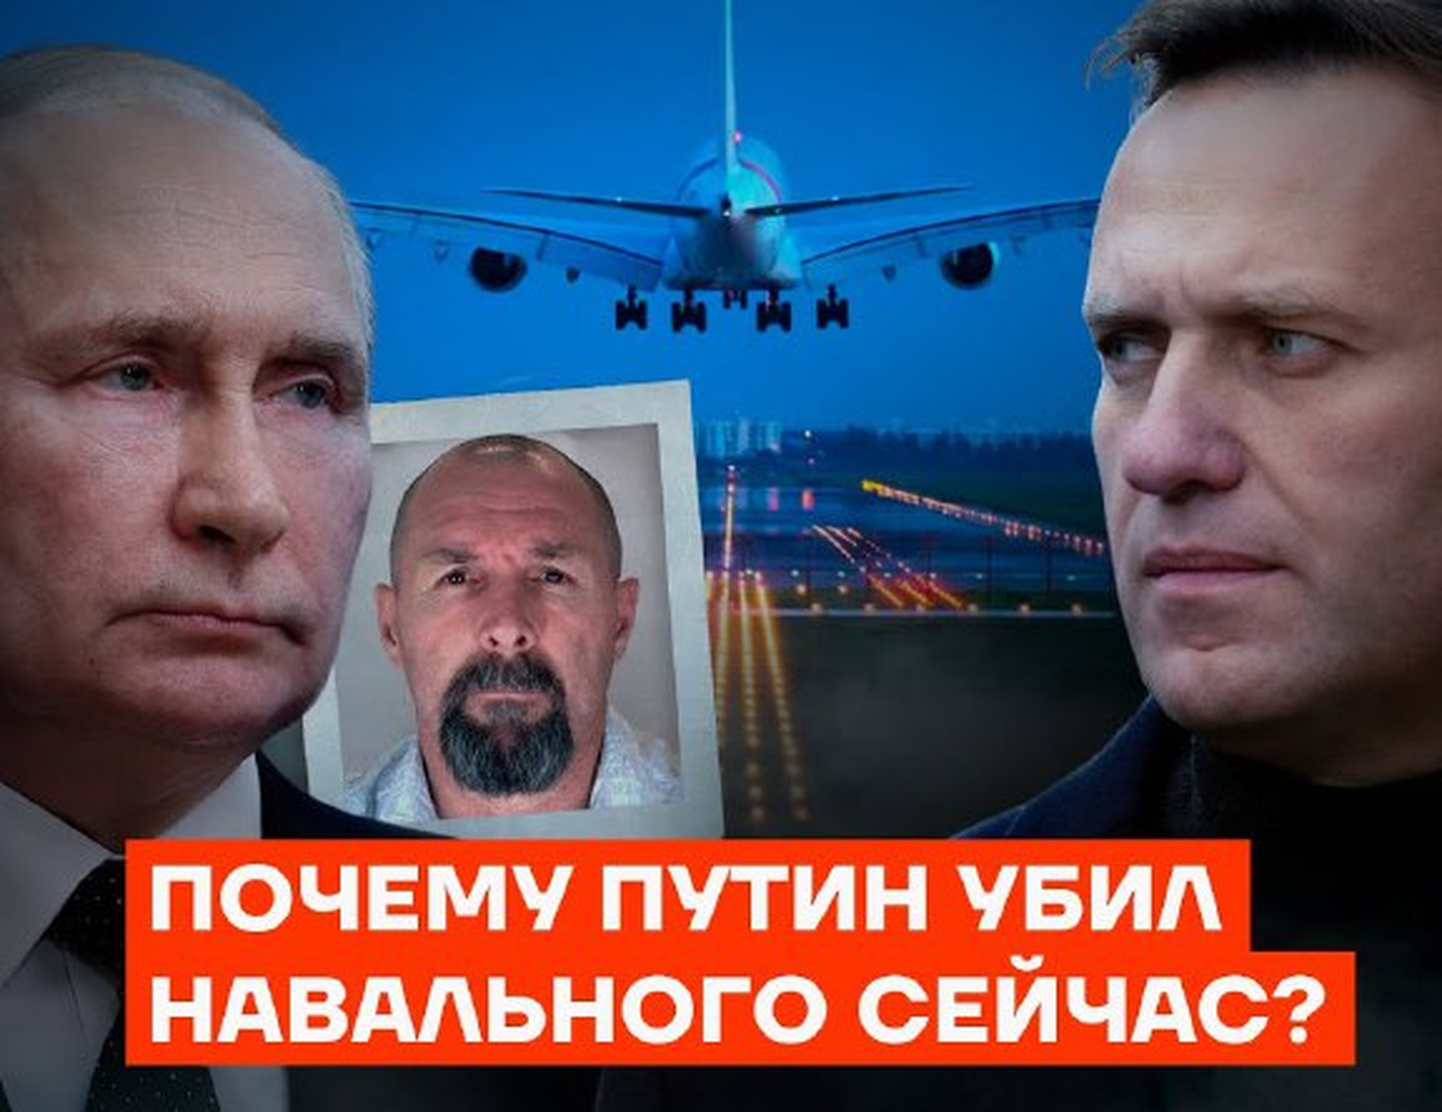 Коллаж к видео, где сторонники Навального утверждают, что лидер российской оппозиции был убит после того, как была достигнута договоренность обменять политика на киллера Красикова.